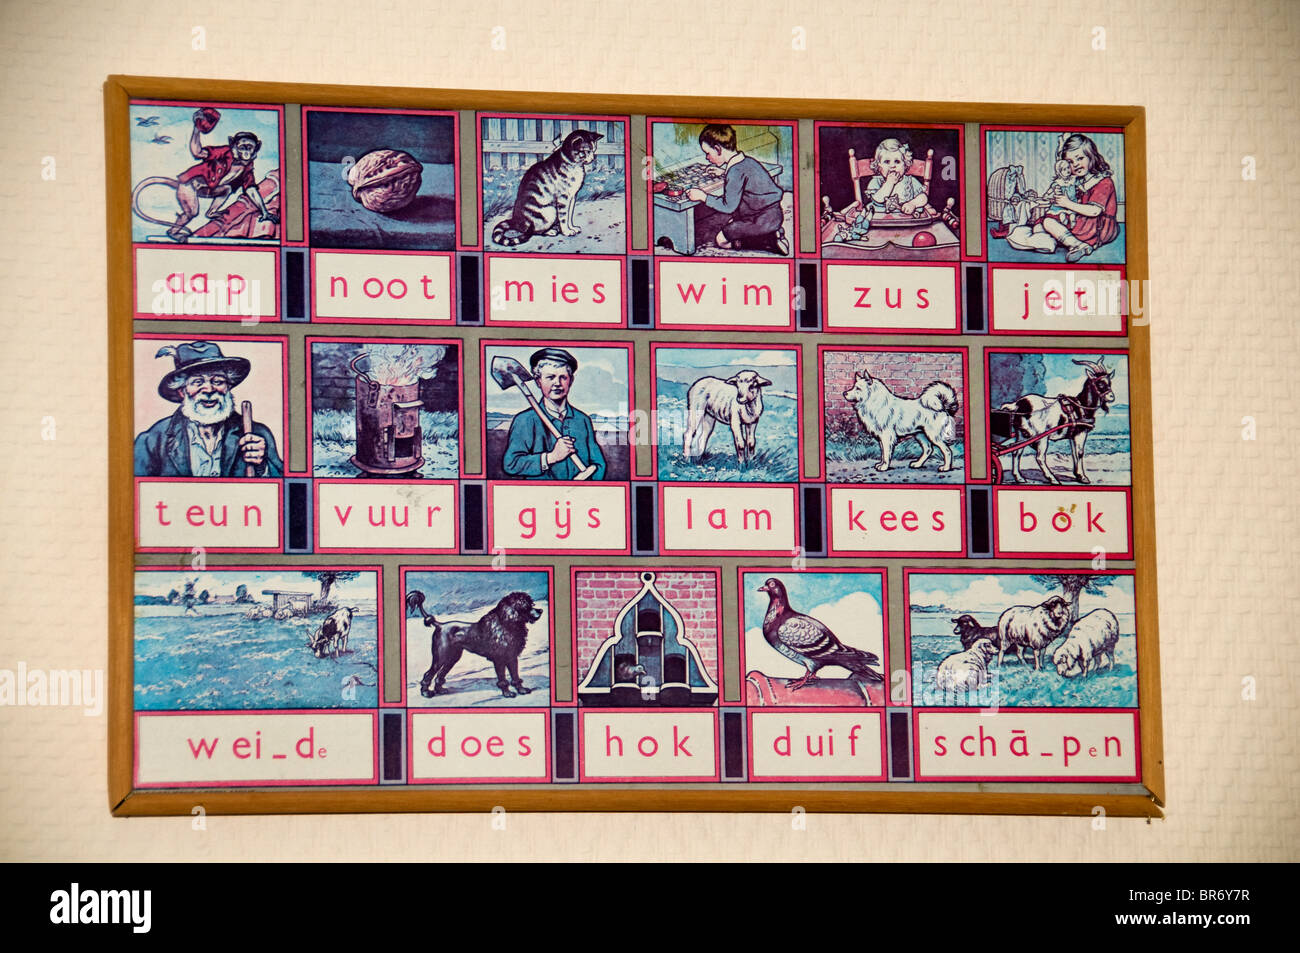 Niederlande Aap Noot Mies niederländische Methode des Lernens in der ersten Hälfte des 20. Jahrhunderts zu lesen Stockfoto